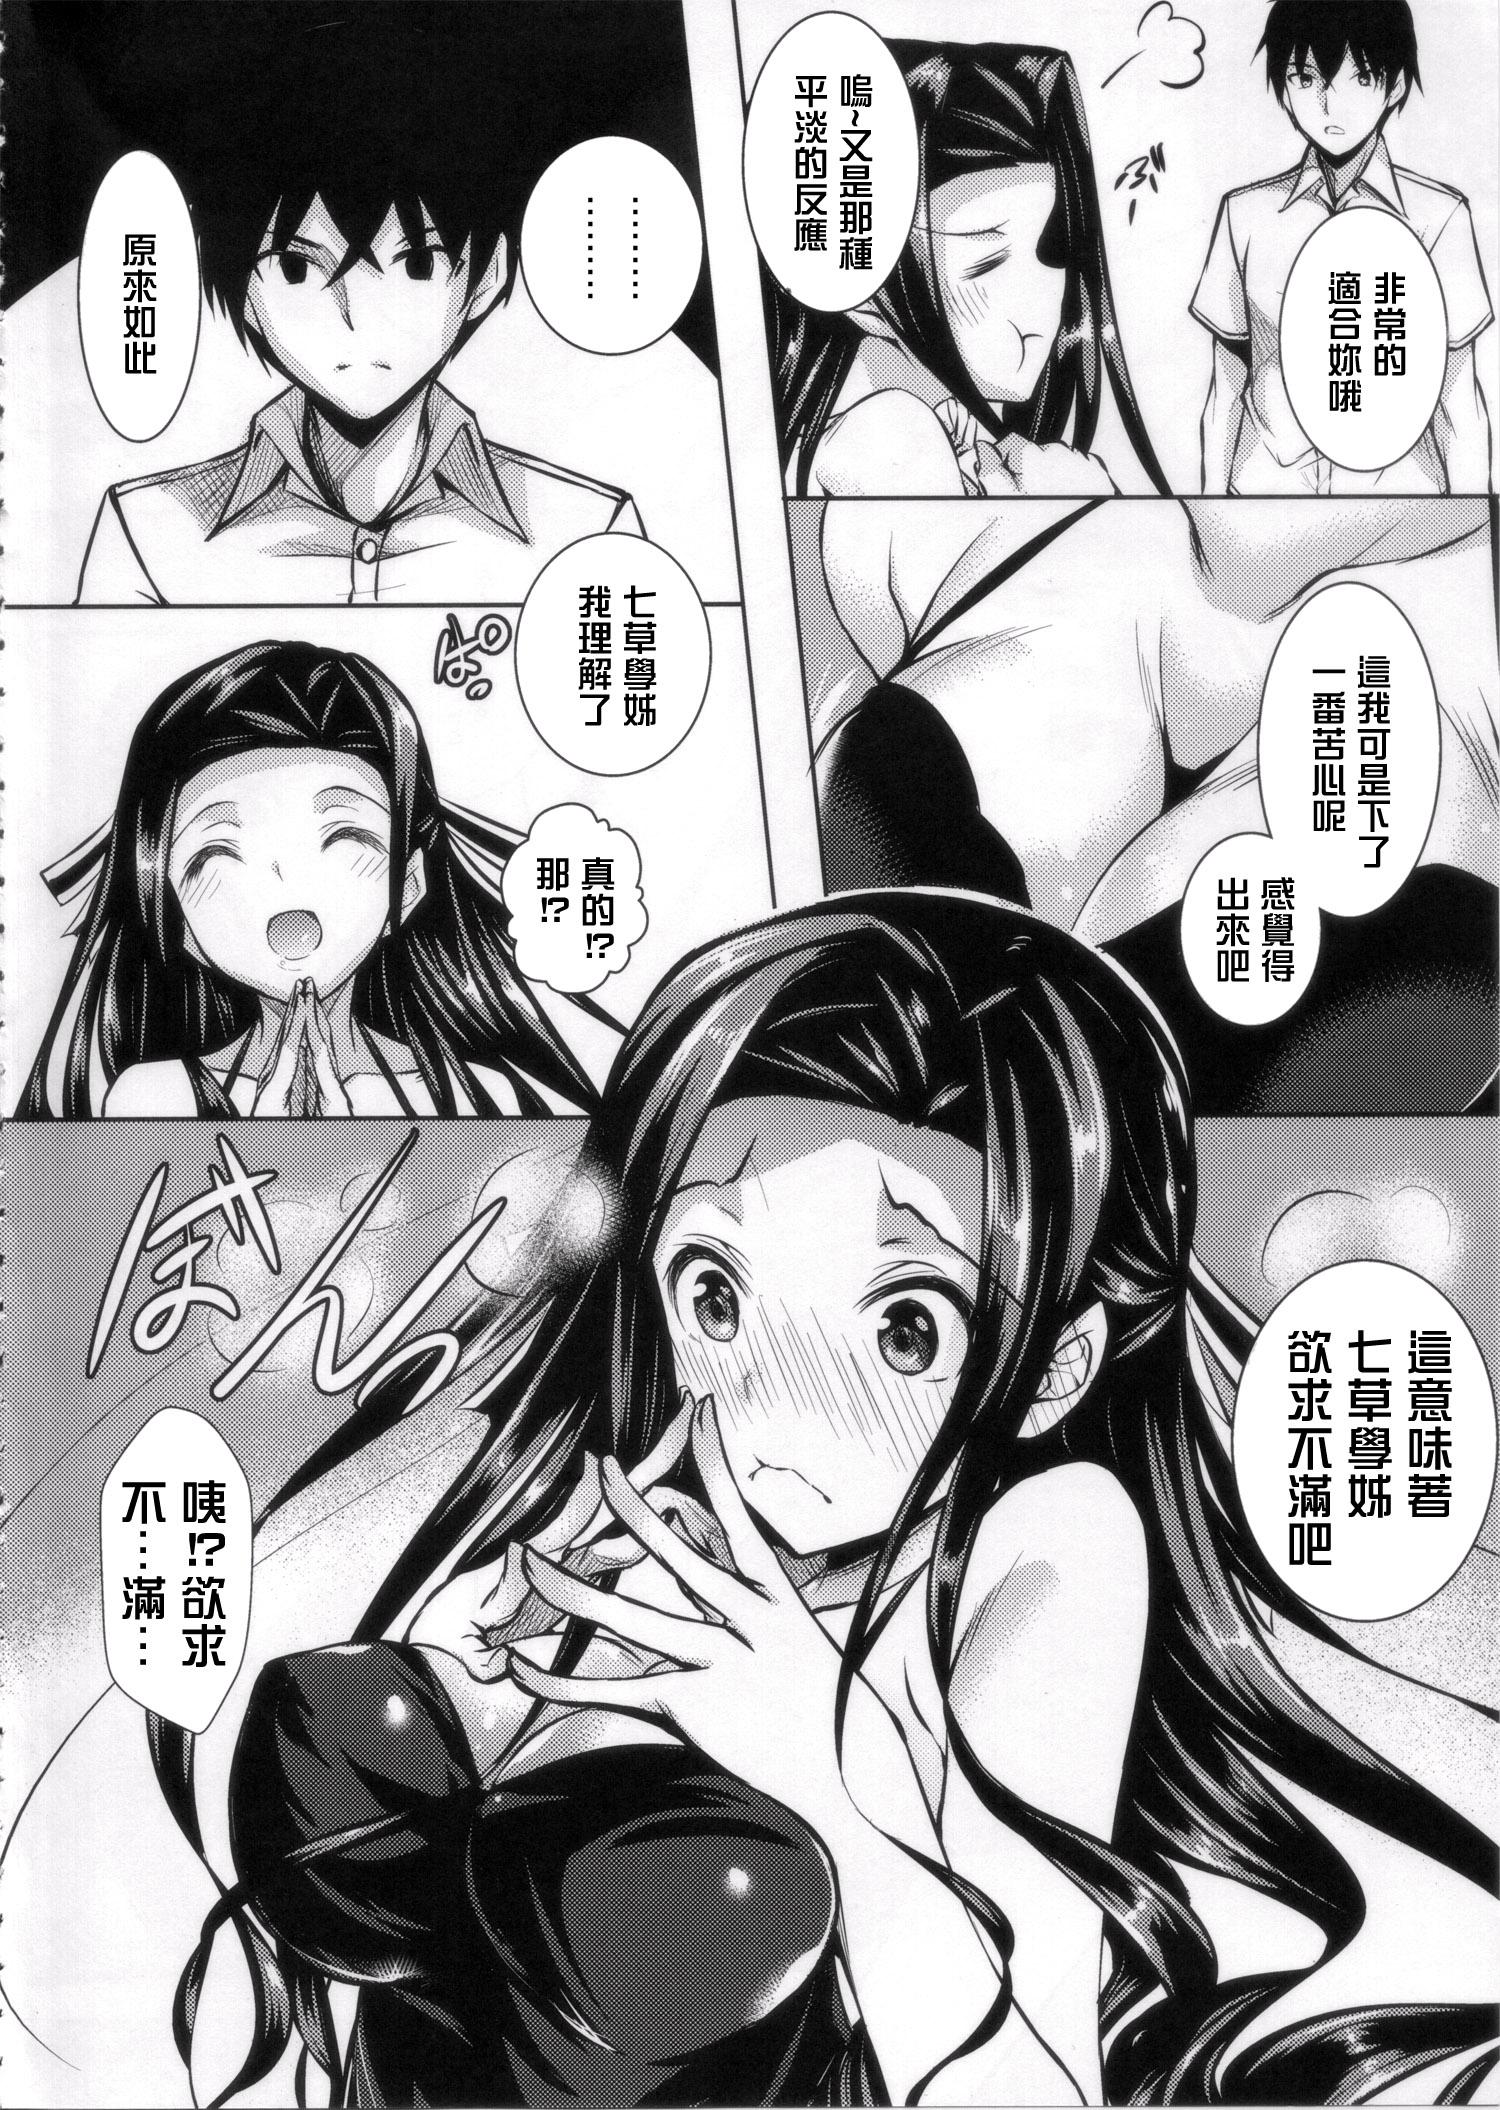 Young Sasuoni! - Mahouka koukou no rettousei Leaked - Page 4